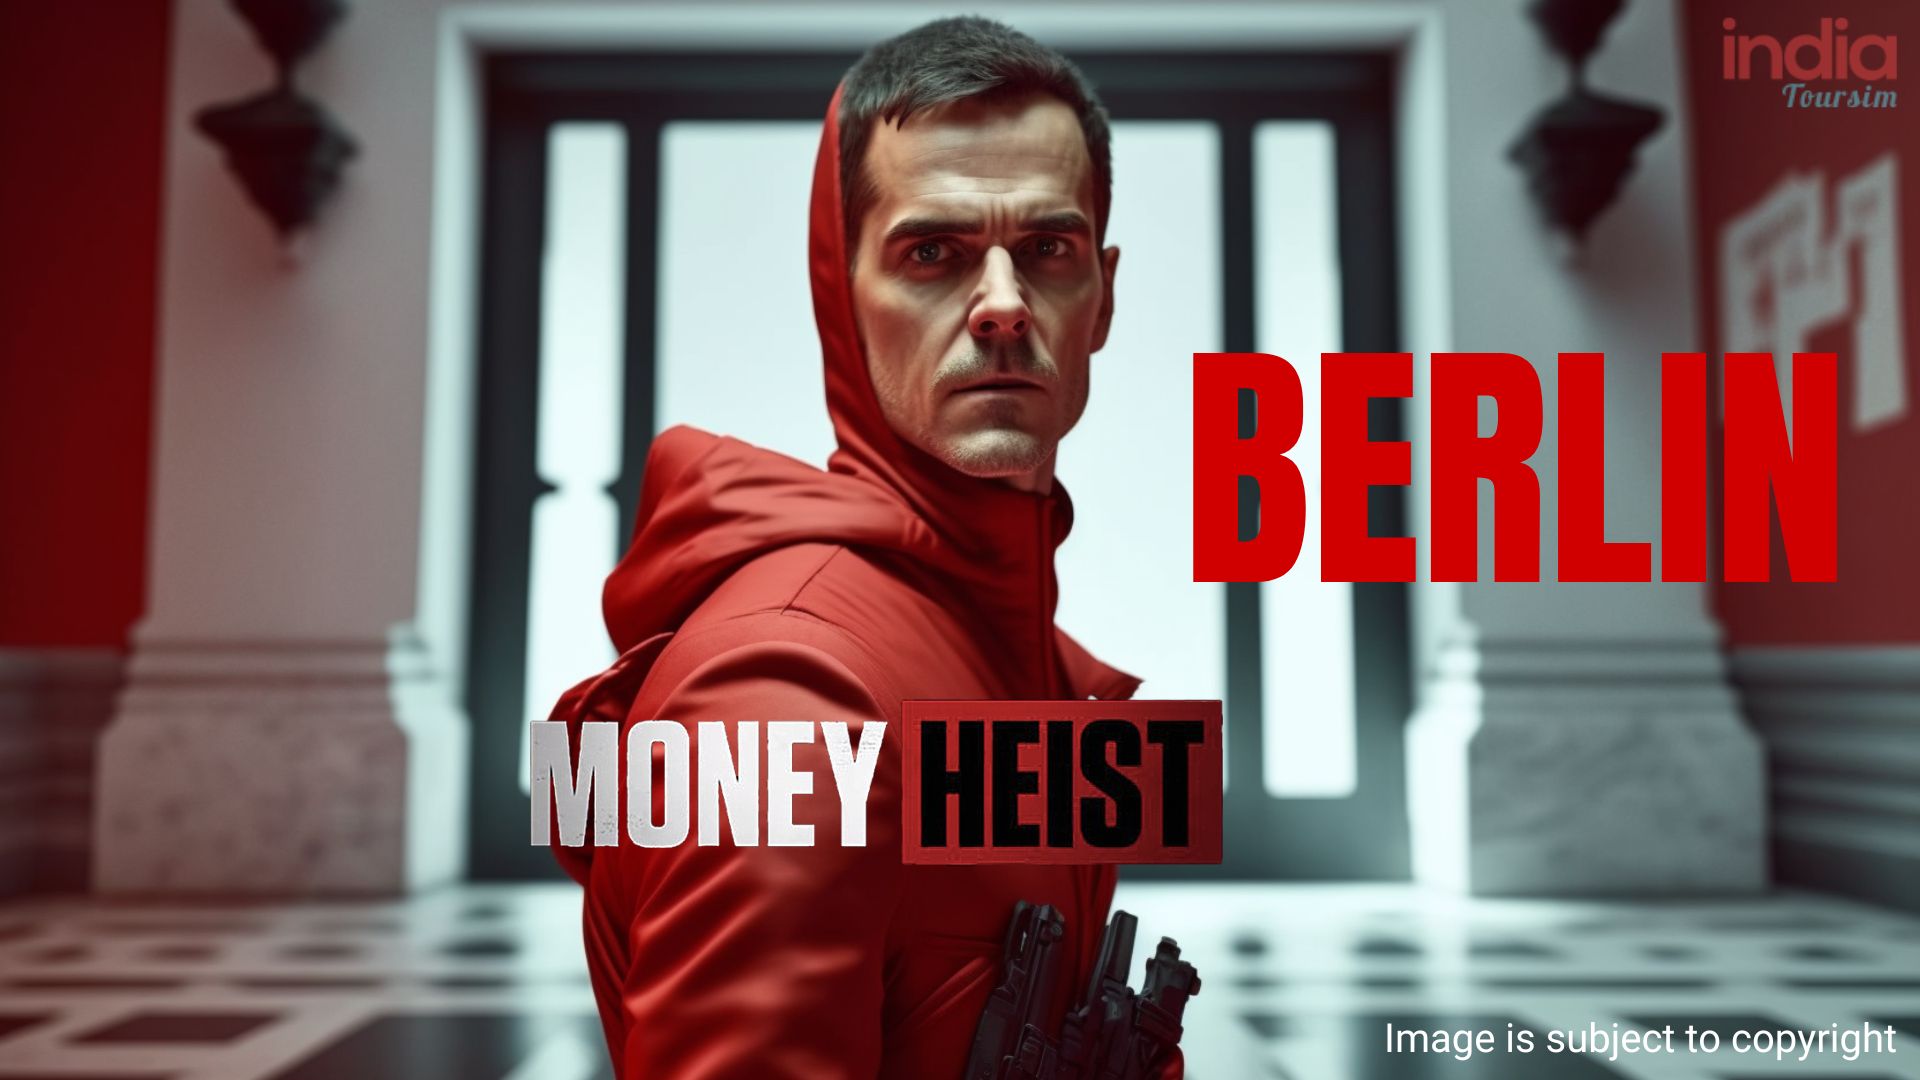 Berlin Money Heist Season 1